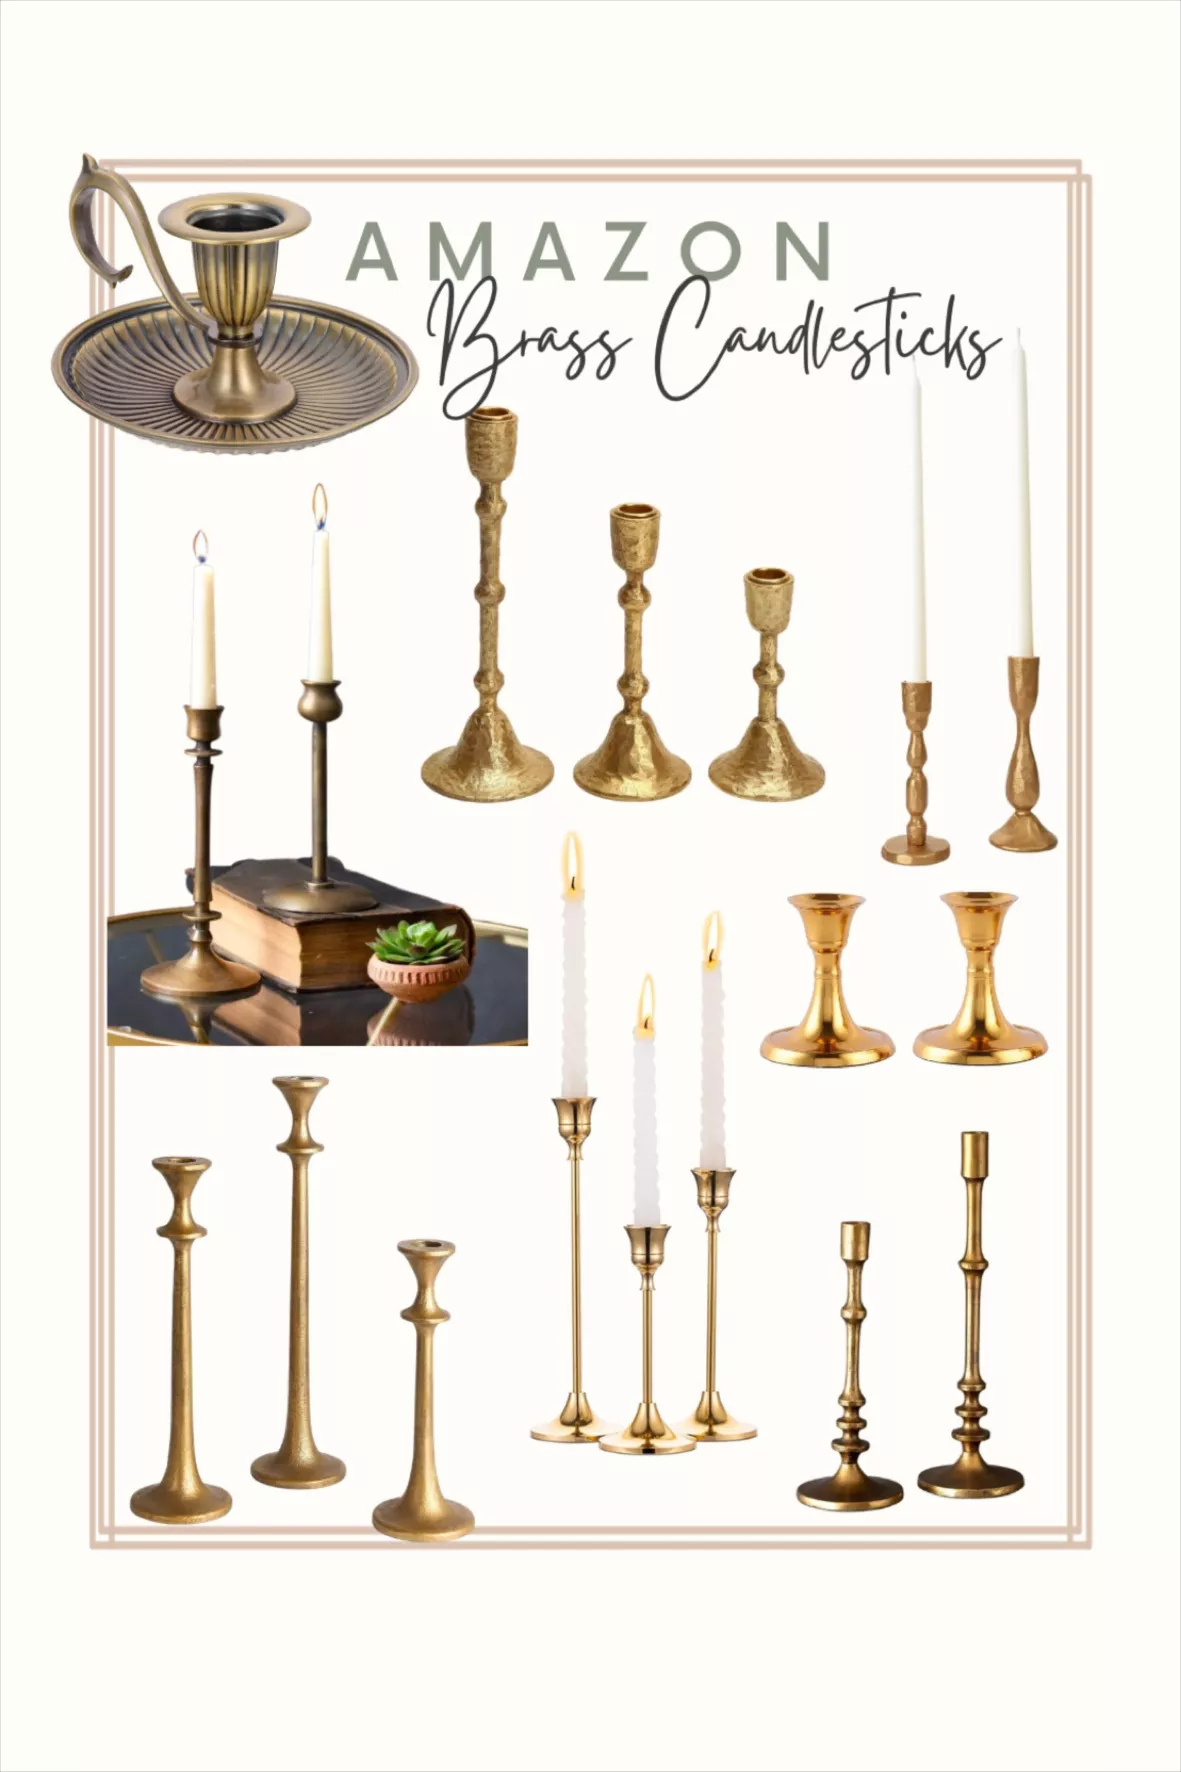 Brass Candlestick Holders